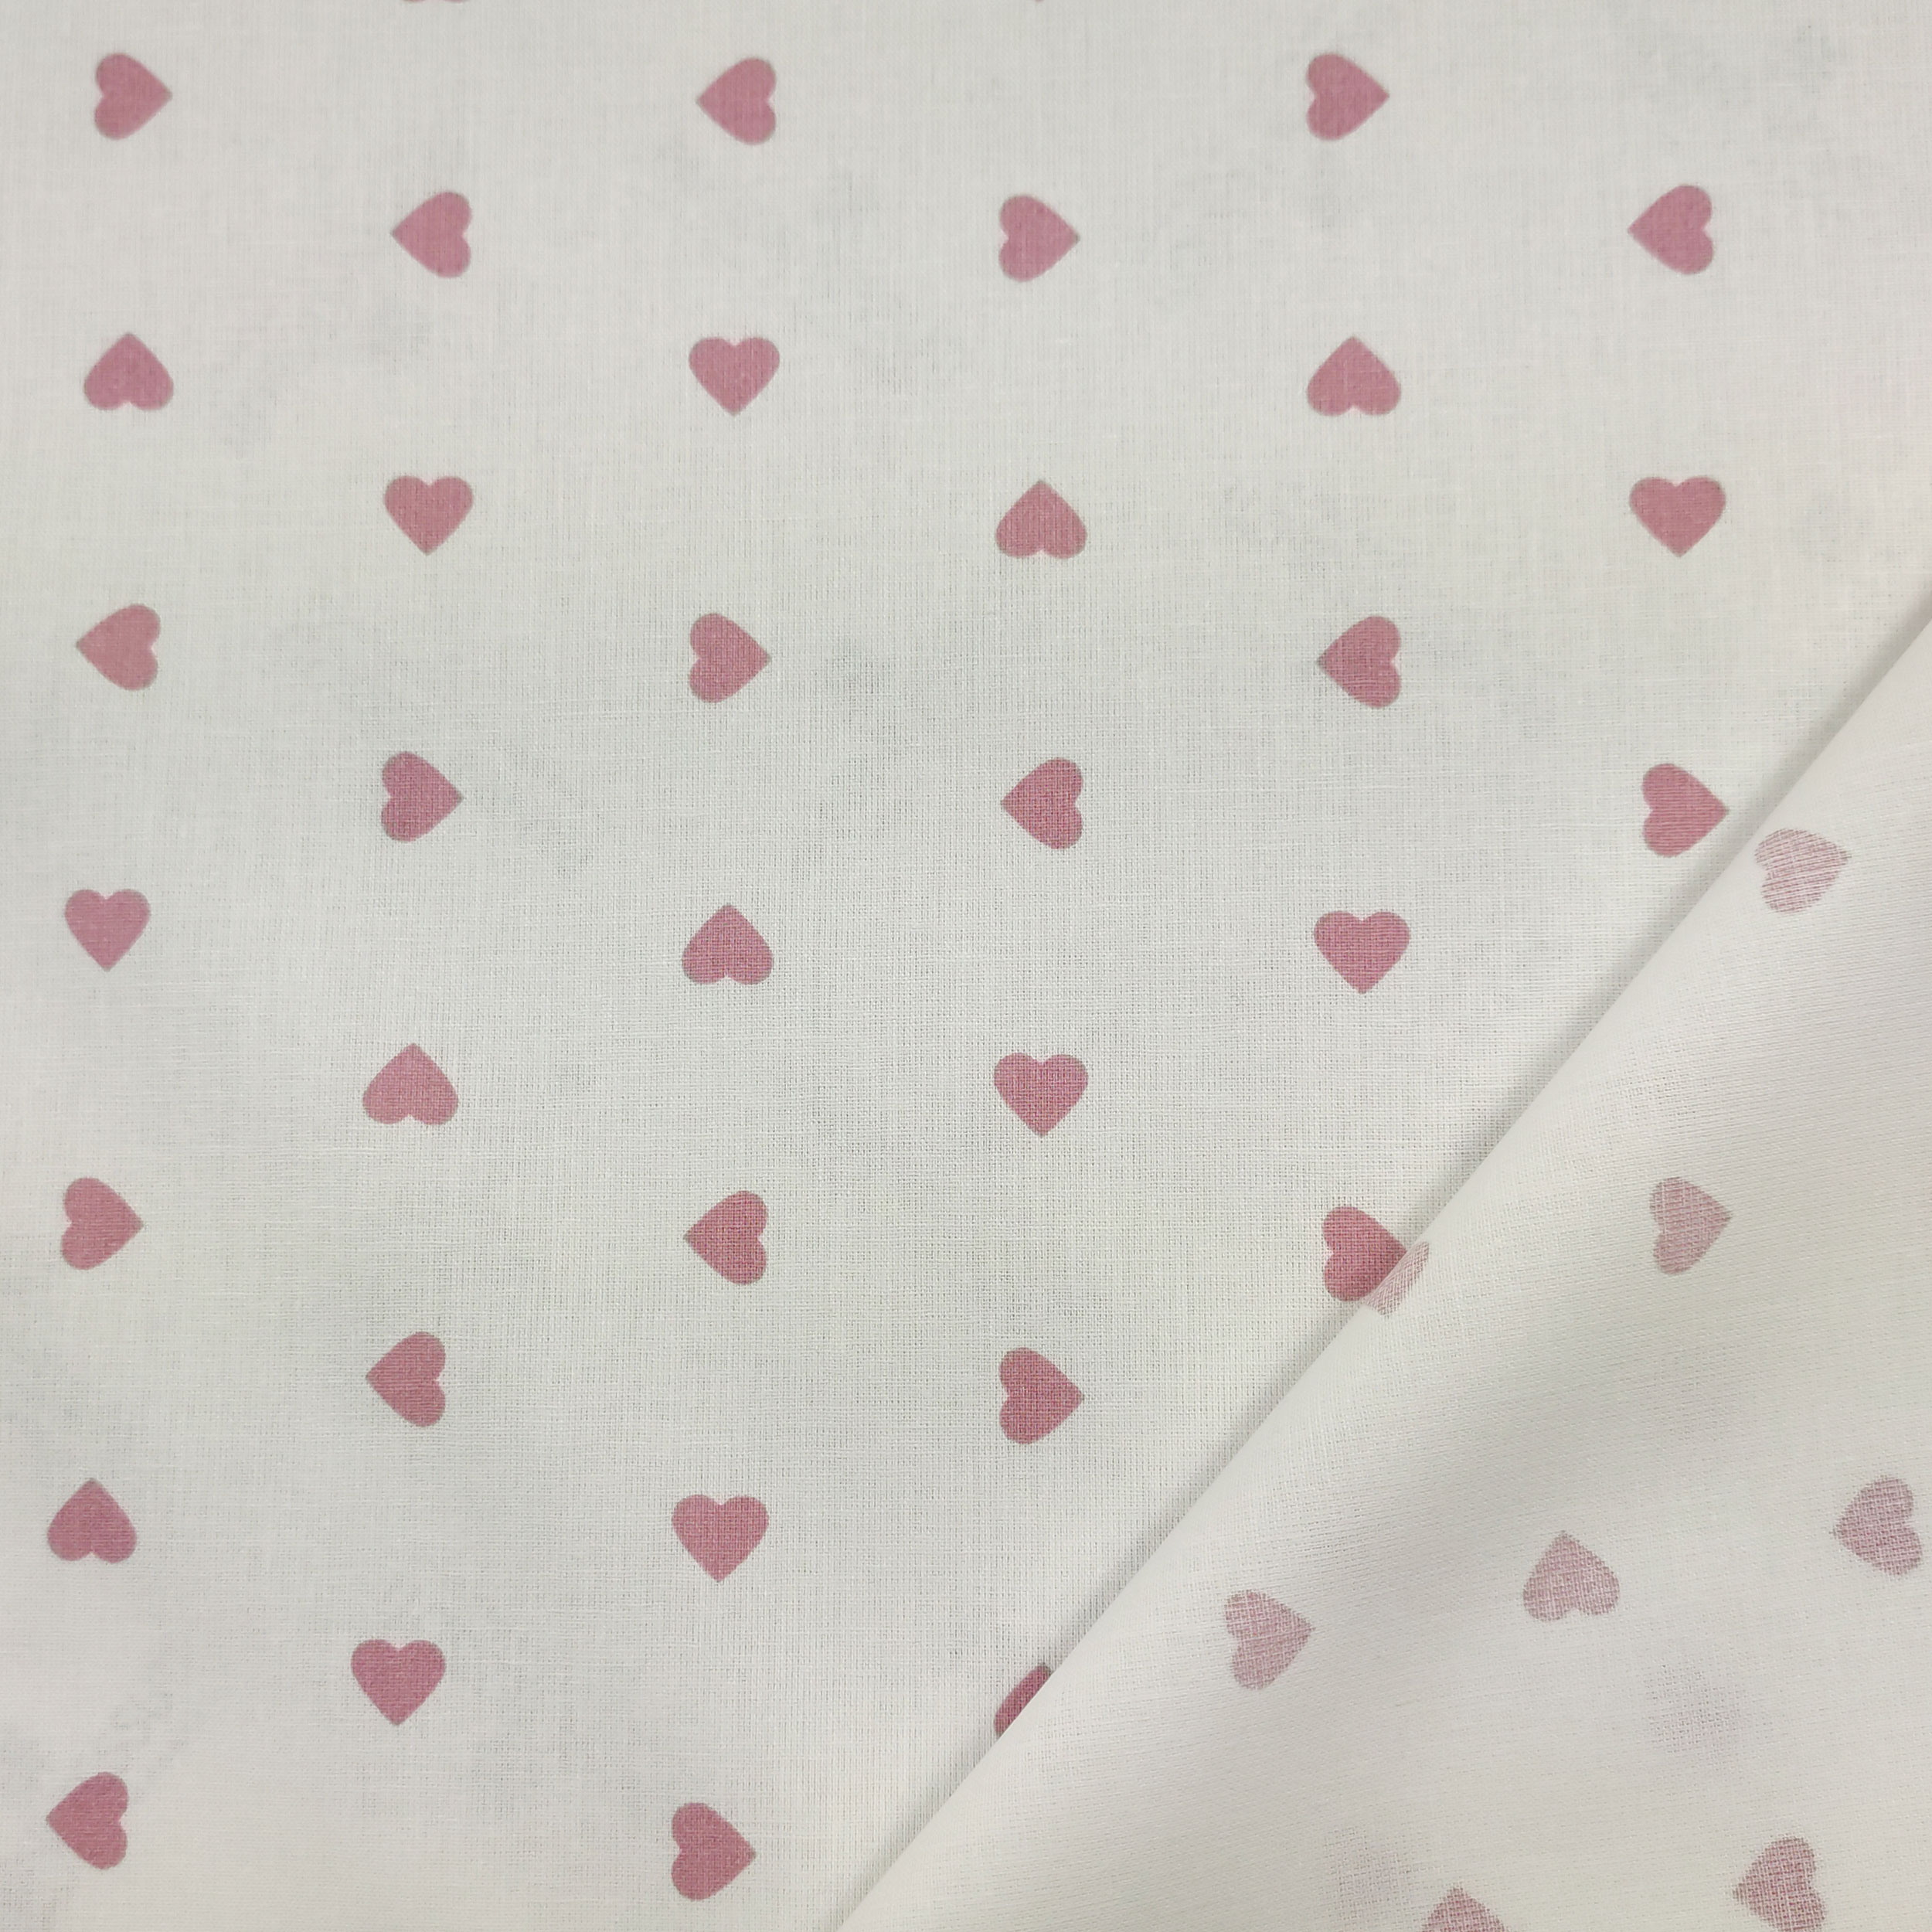 tessuto cotone leggero cuore rosa antico sfondo bianco